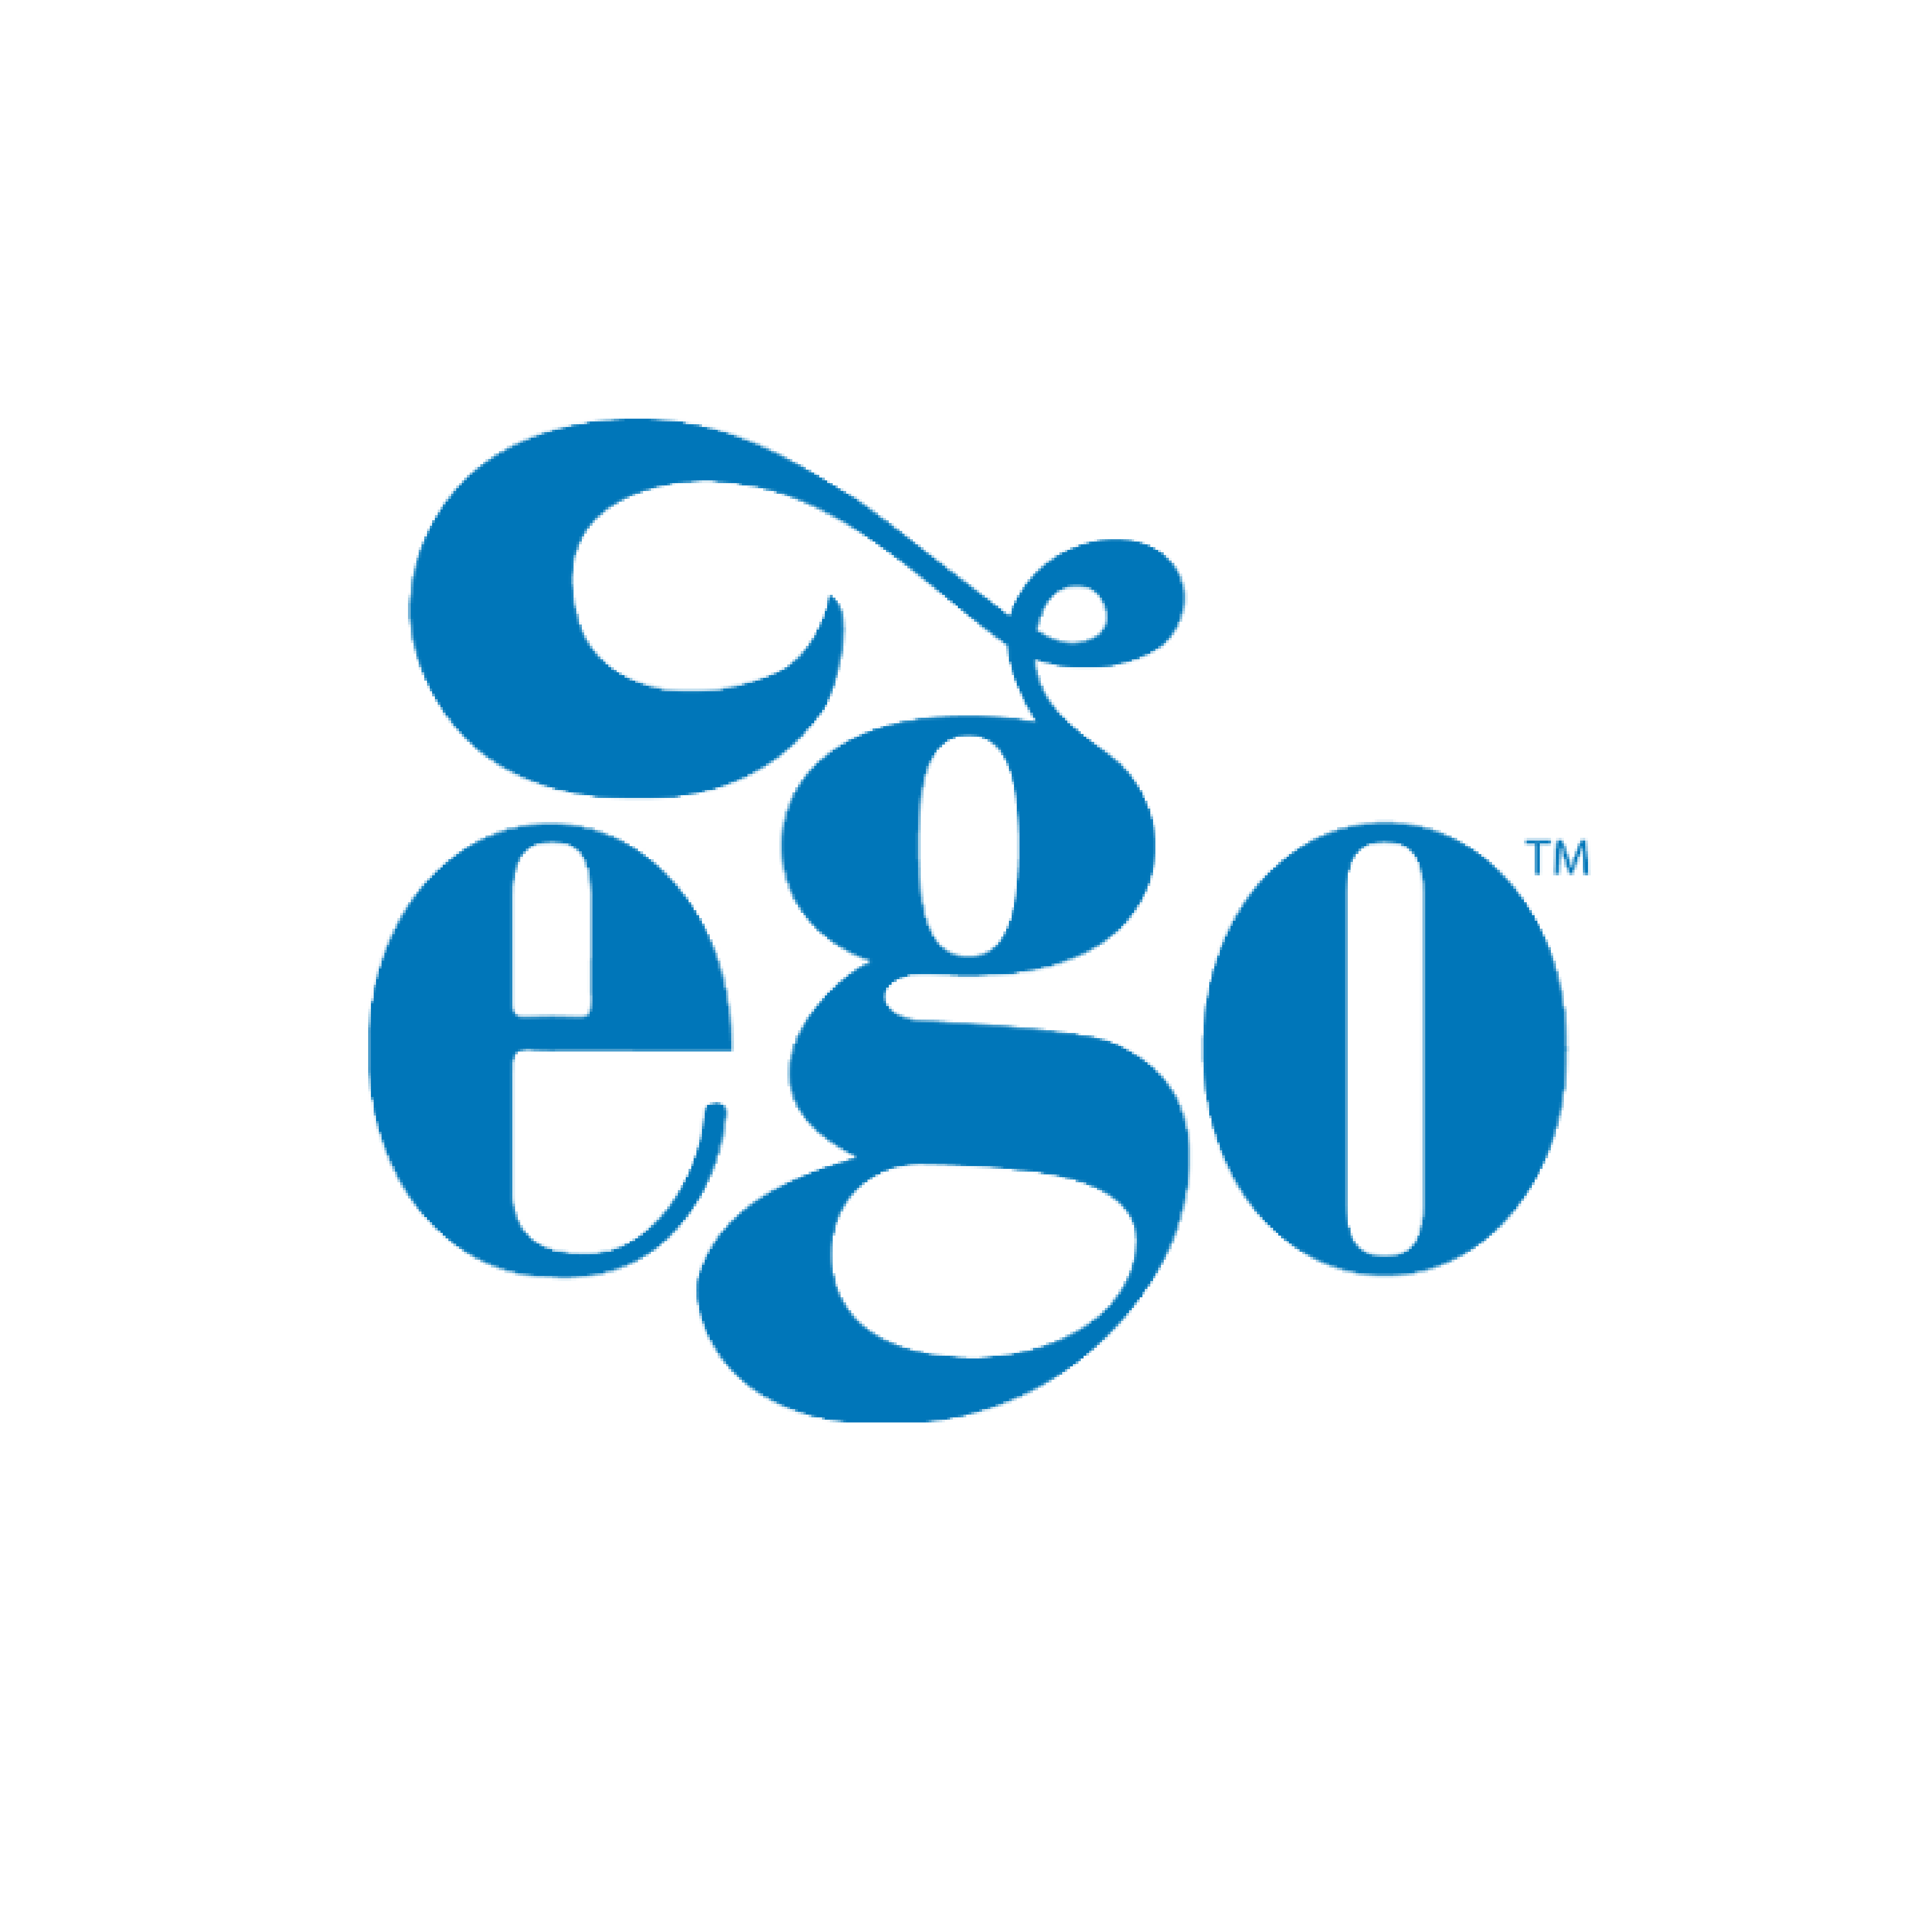 ego logo